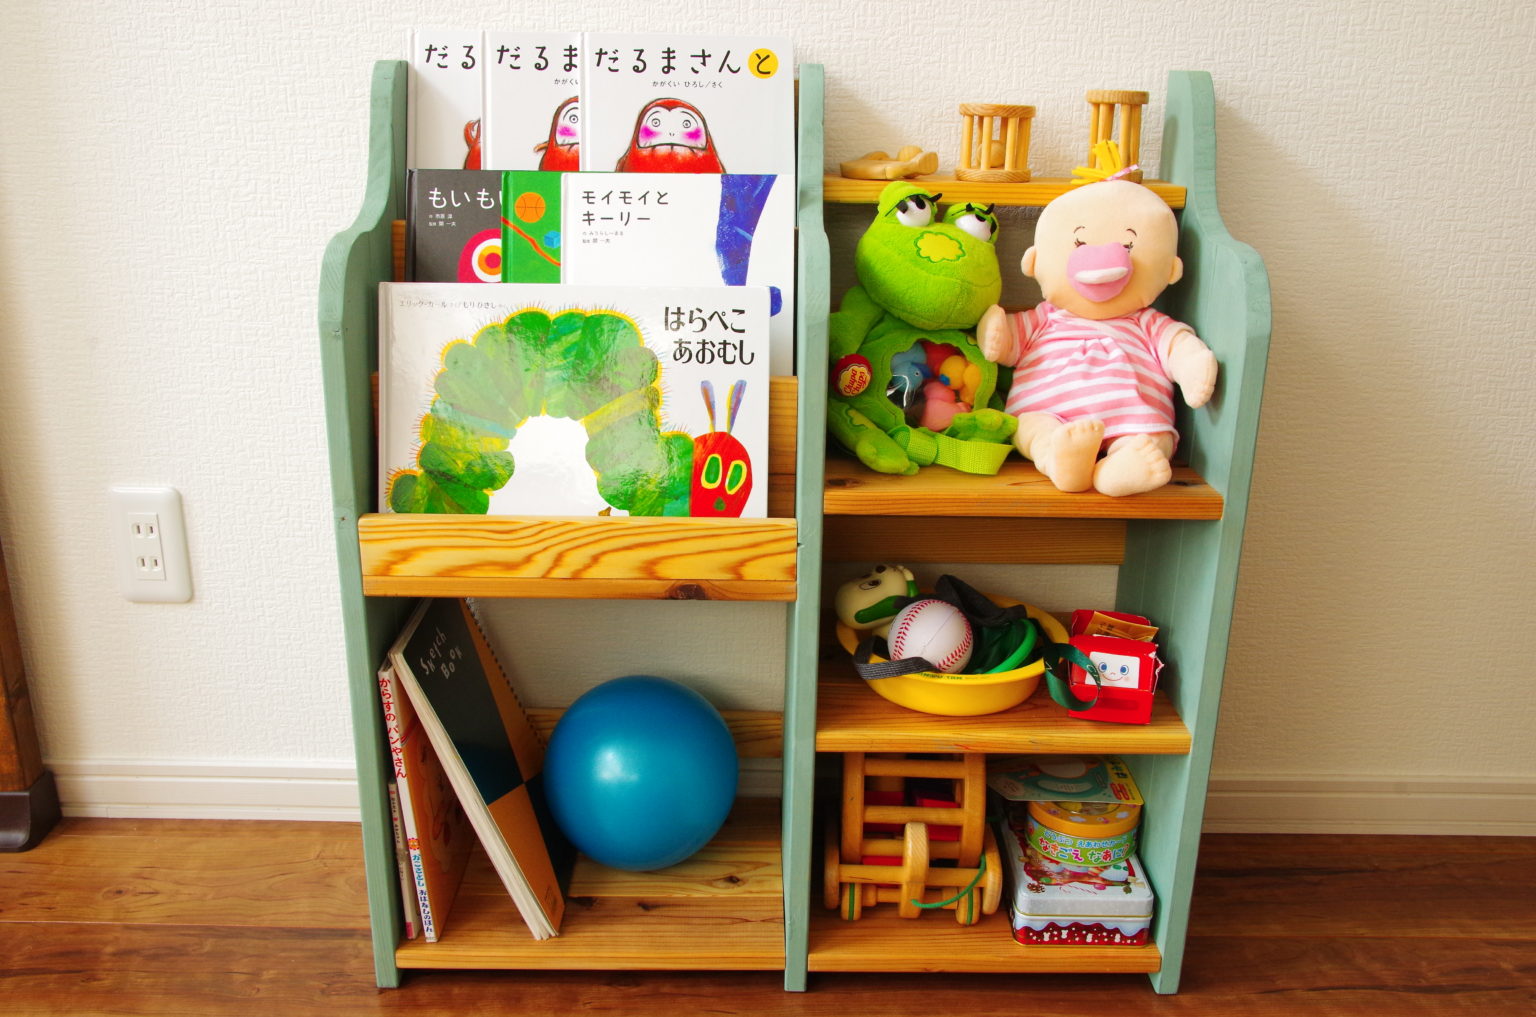 [DIY]1×4材を使った子供の絵本棚兼おもちゃの収納棚の作り方[バターミルクペイント] とーちゃんのメモブログ